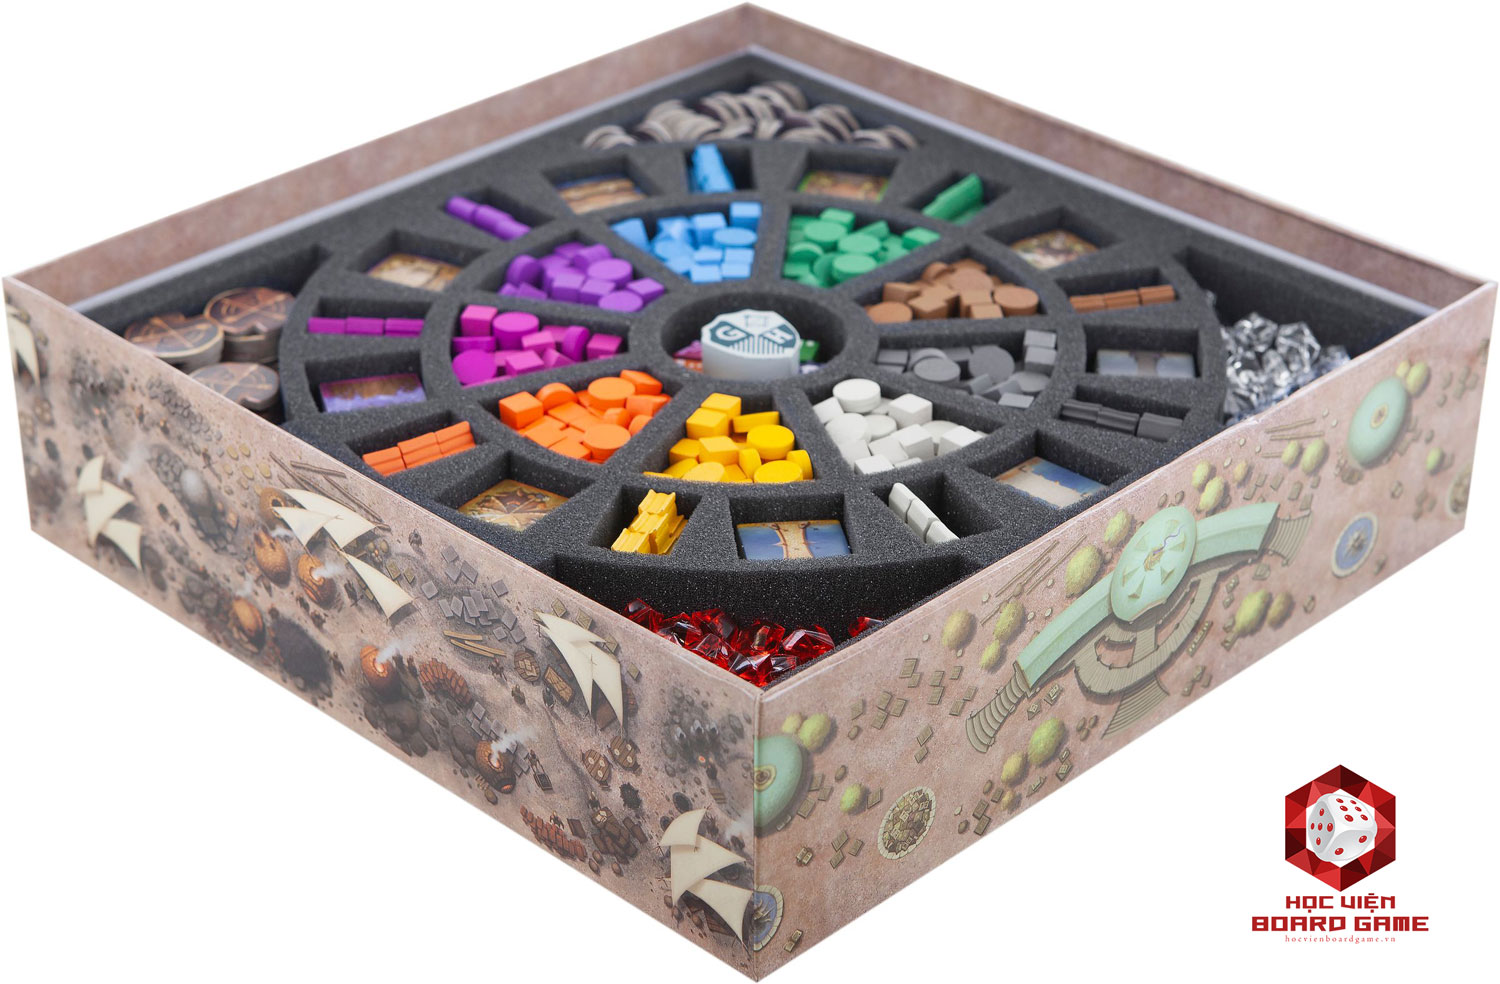 Các hộp đựng boardgame được thiết kế tận dụng đến từng không gian nhỏ, giúp sắp đặt các item một cách ngăn nắp, bảo quản lâu dài và tiện lợi khi mang theo.